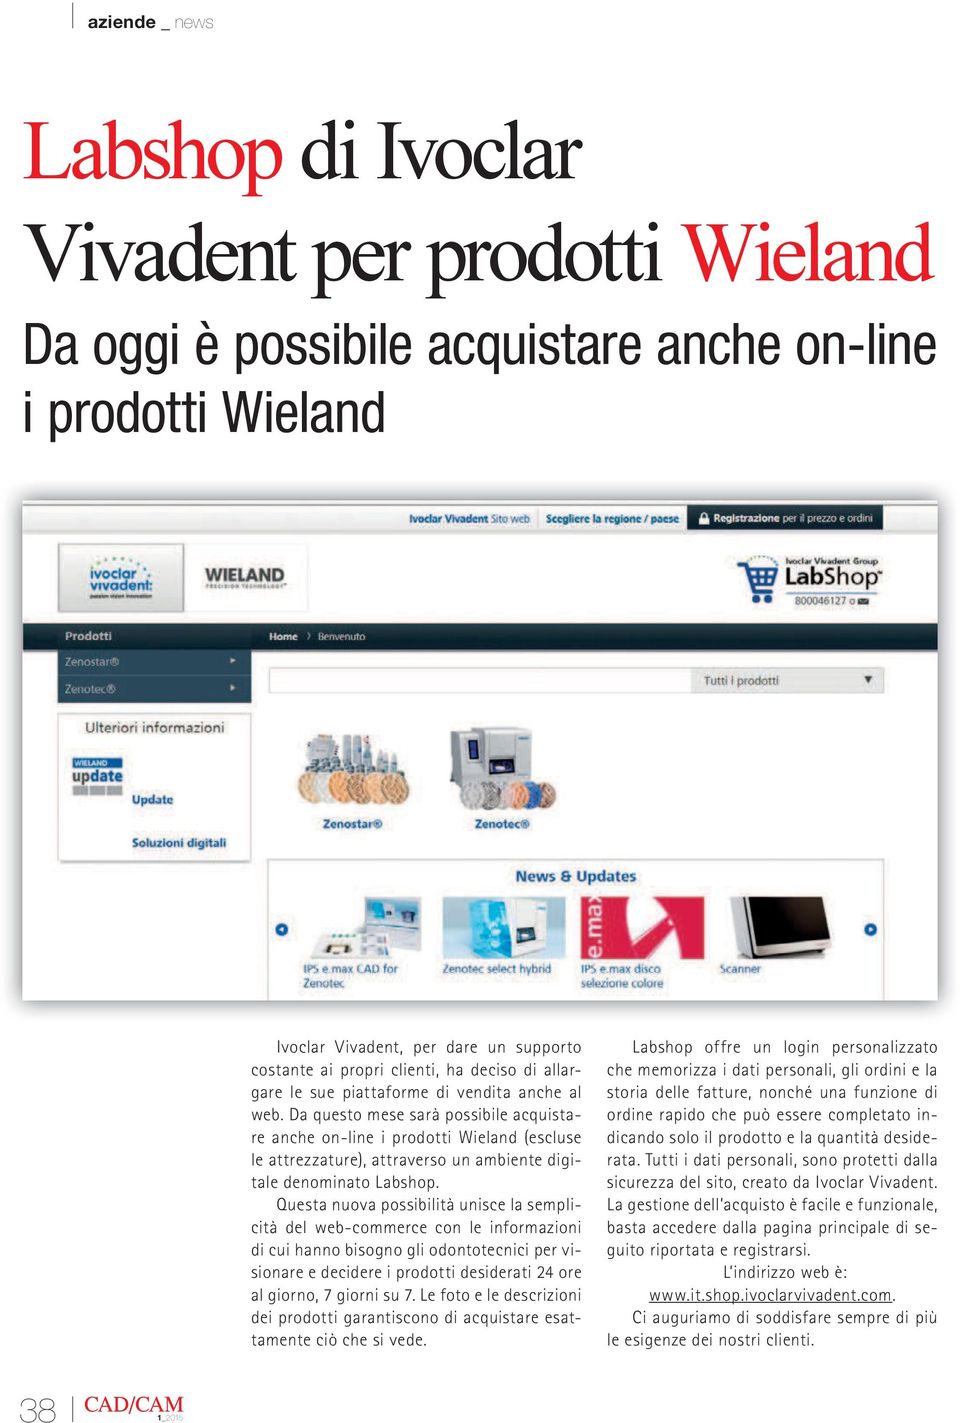 Da questo mese sarà possibile acquistare anche on-line i prodotti Wieland (escluse le attrezzature), attraverso un ambiente digitale denominato Labshop.